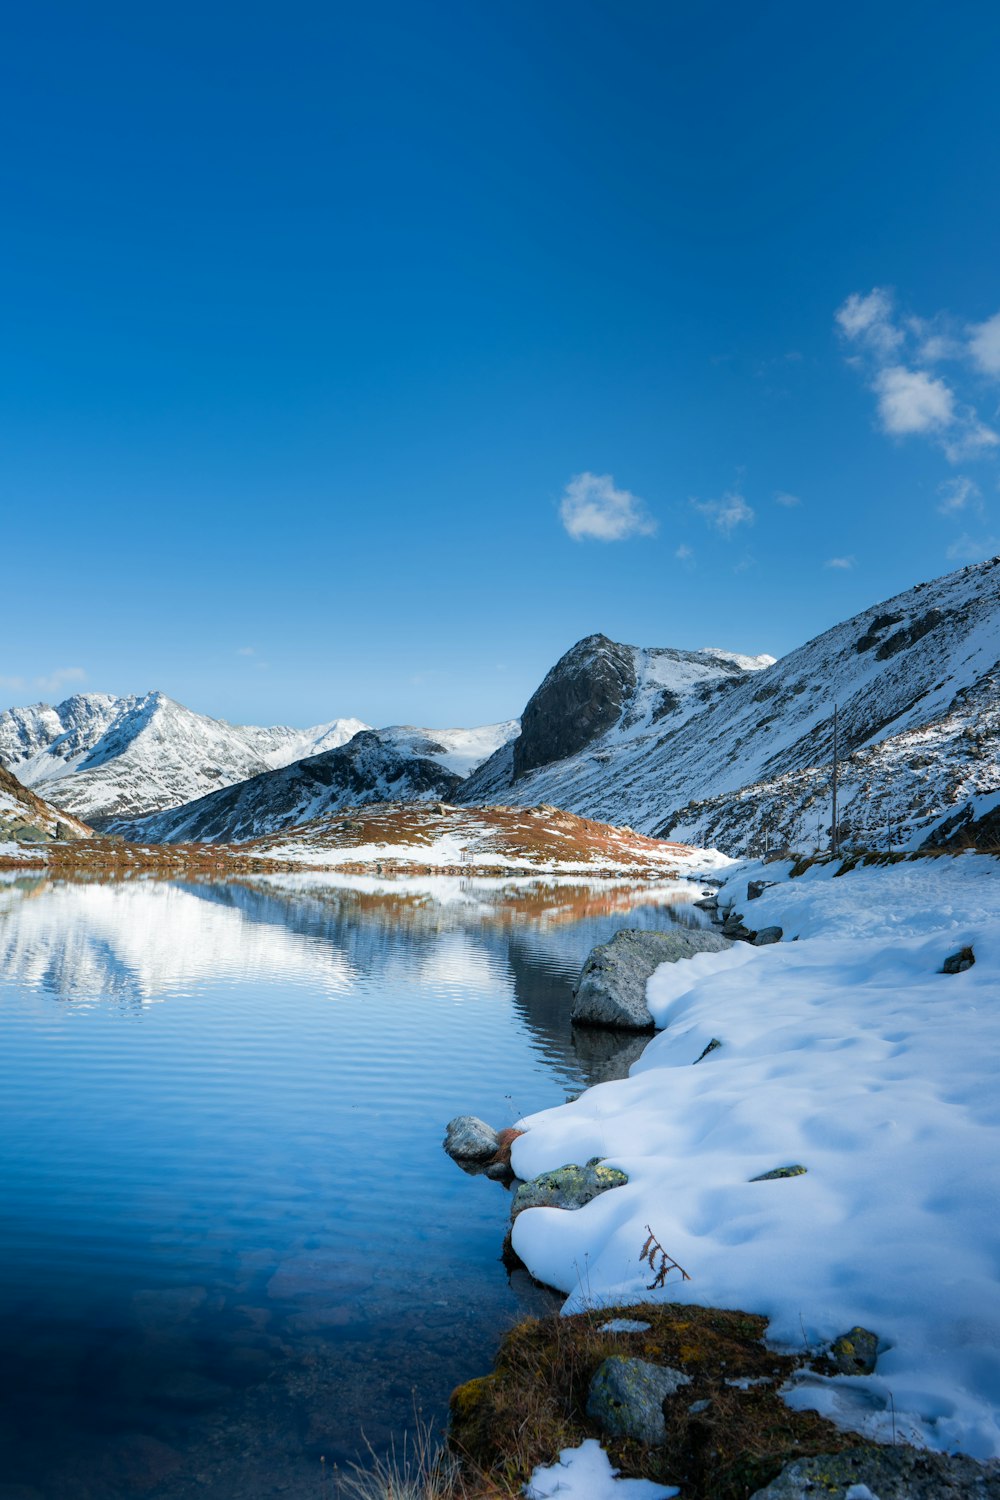 Un lac entouré de montagnes enneigées sous un ciel bleu